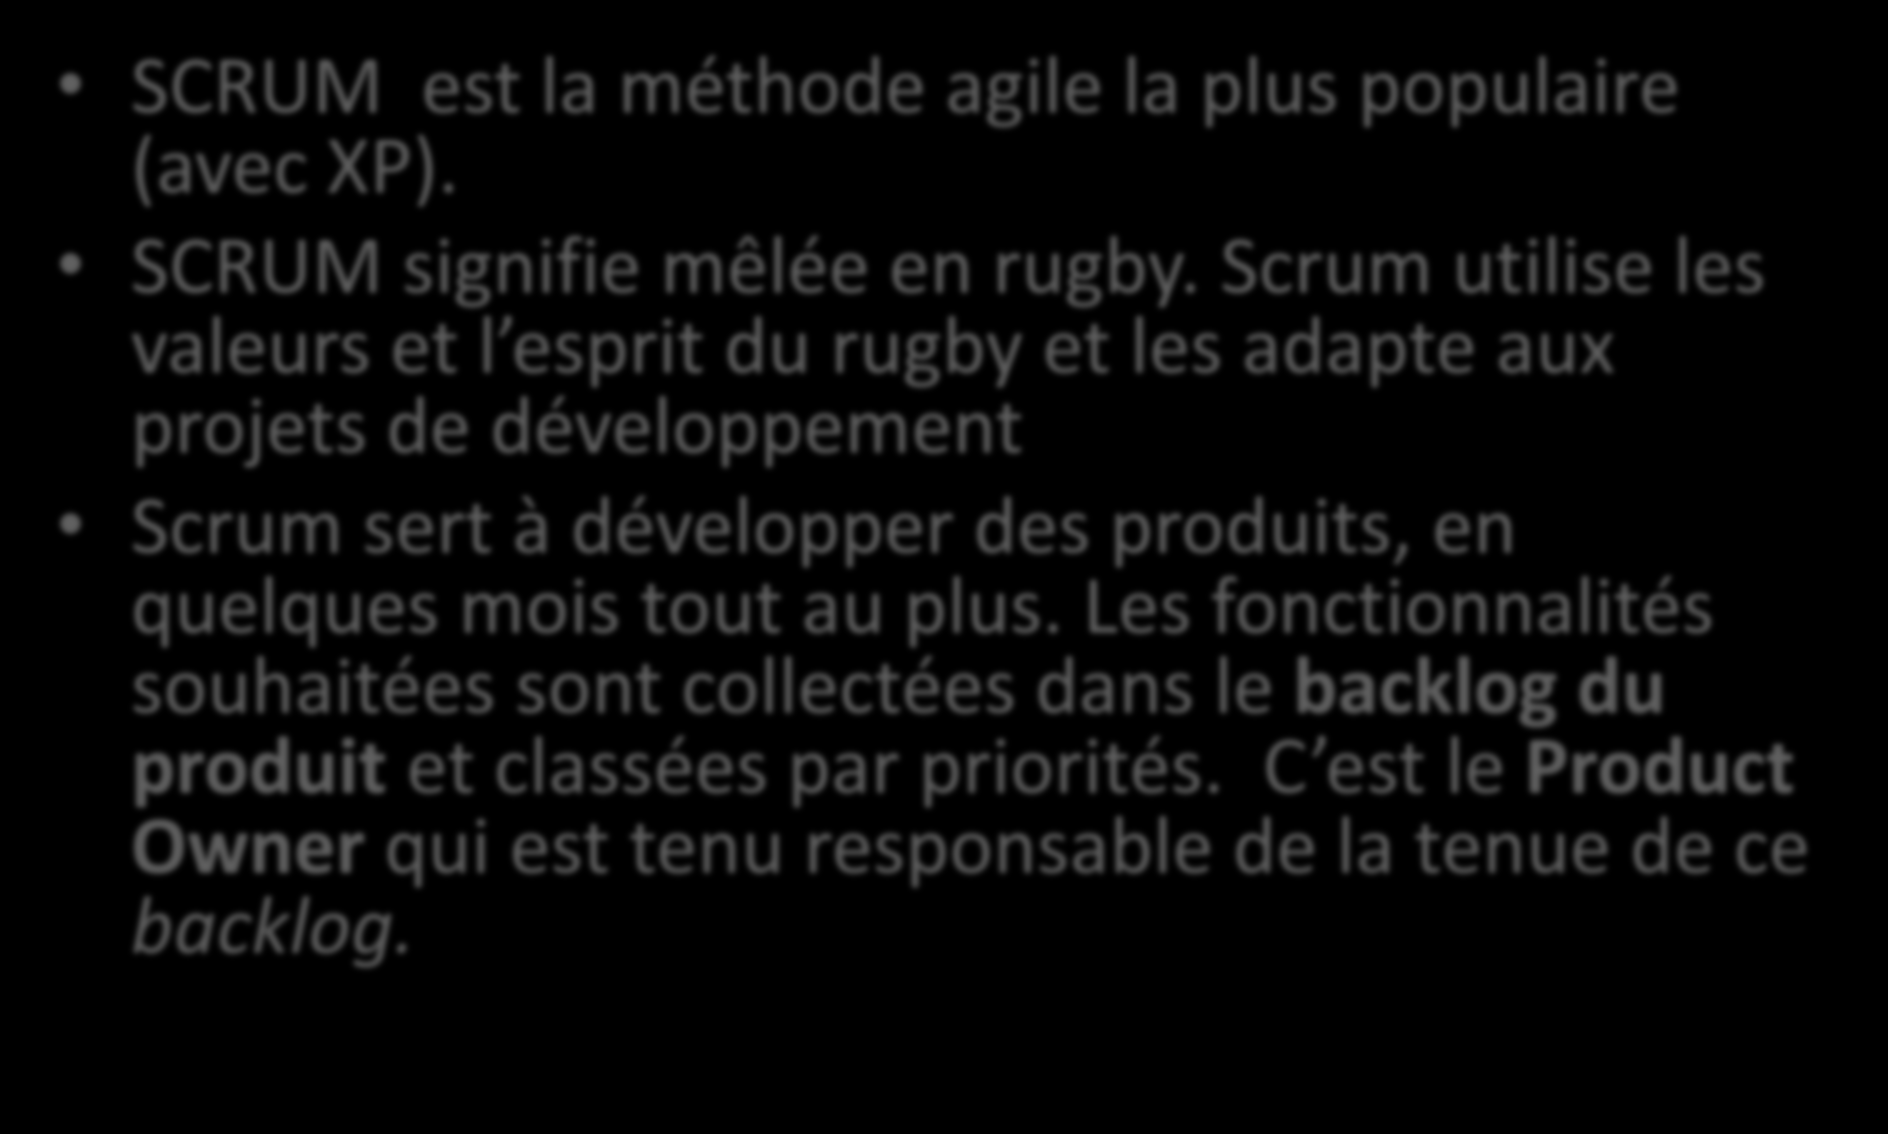 SCRUM est la méthode agile la plus populaire (avec XP). SCRUM signifie mêlée en rugby.